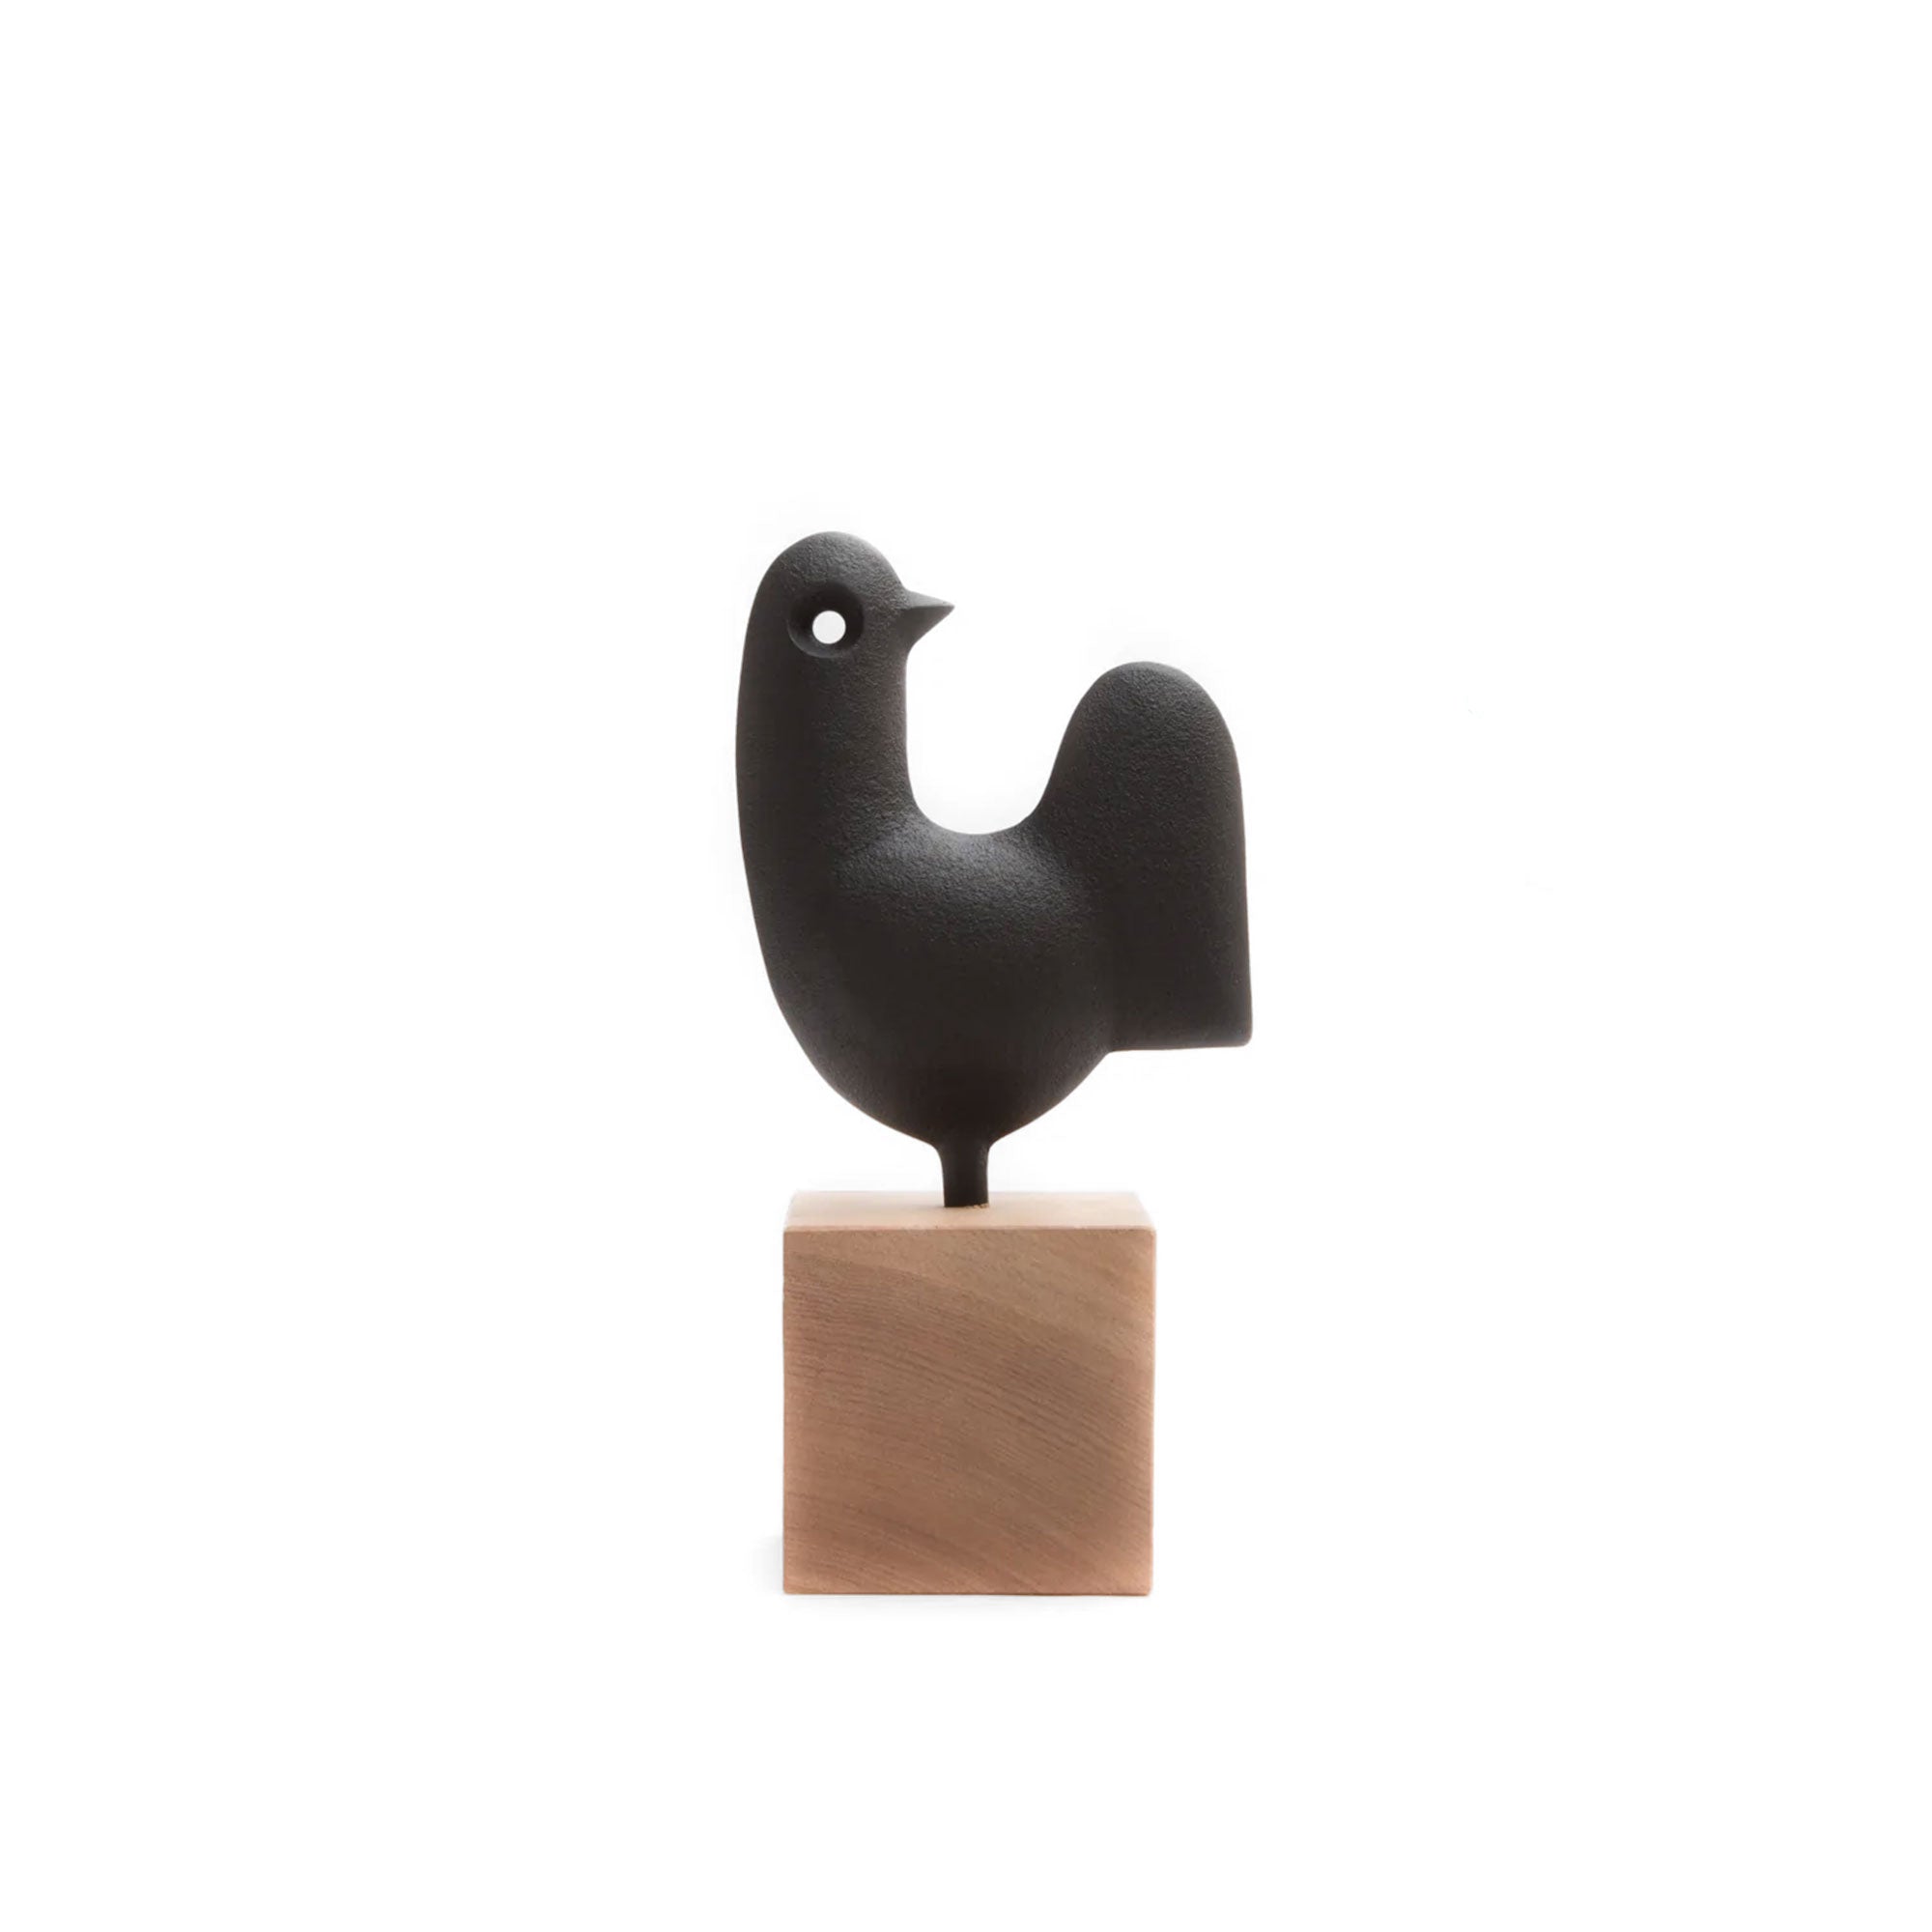 Cast Iron Weathercock Bird Sculpture